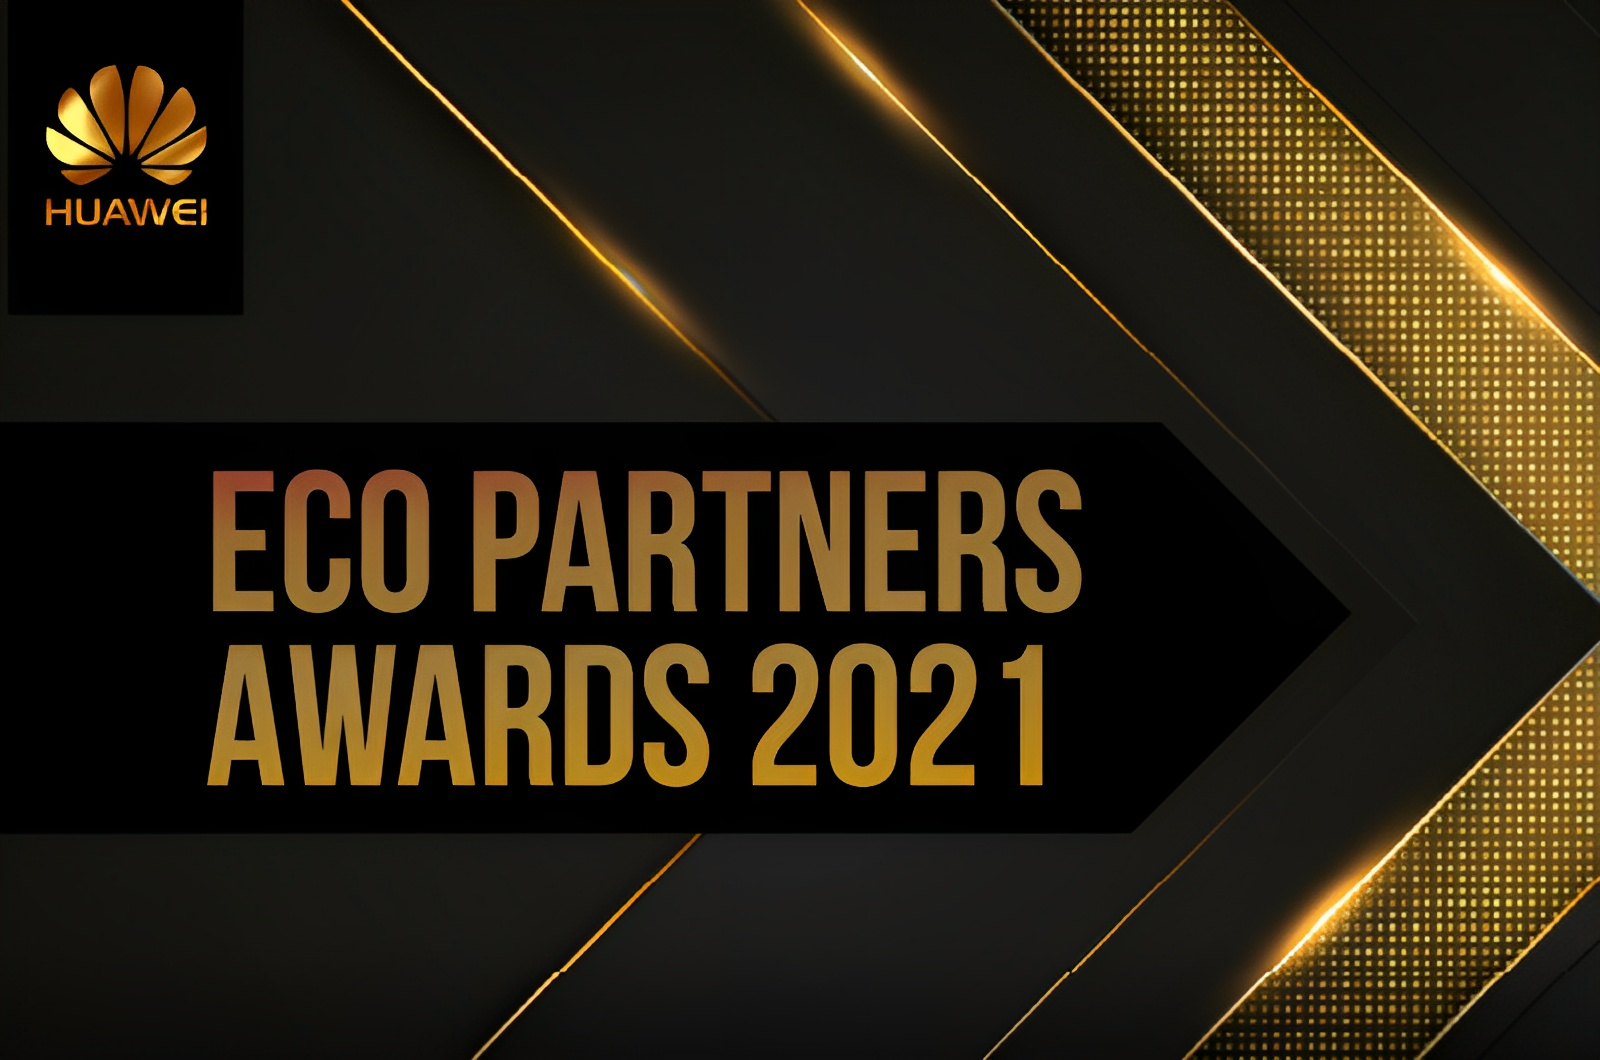 Eco Partners Awards en Experiencias LLC dirigida por Nicolás Halac y Ludmila Halac